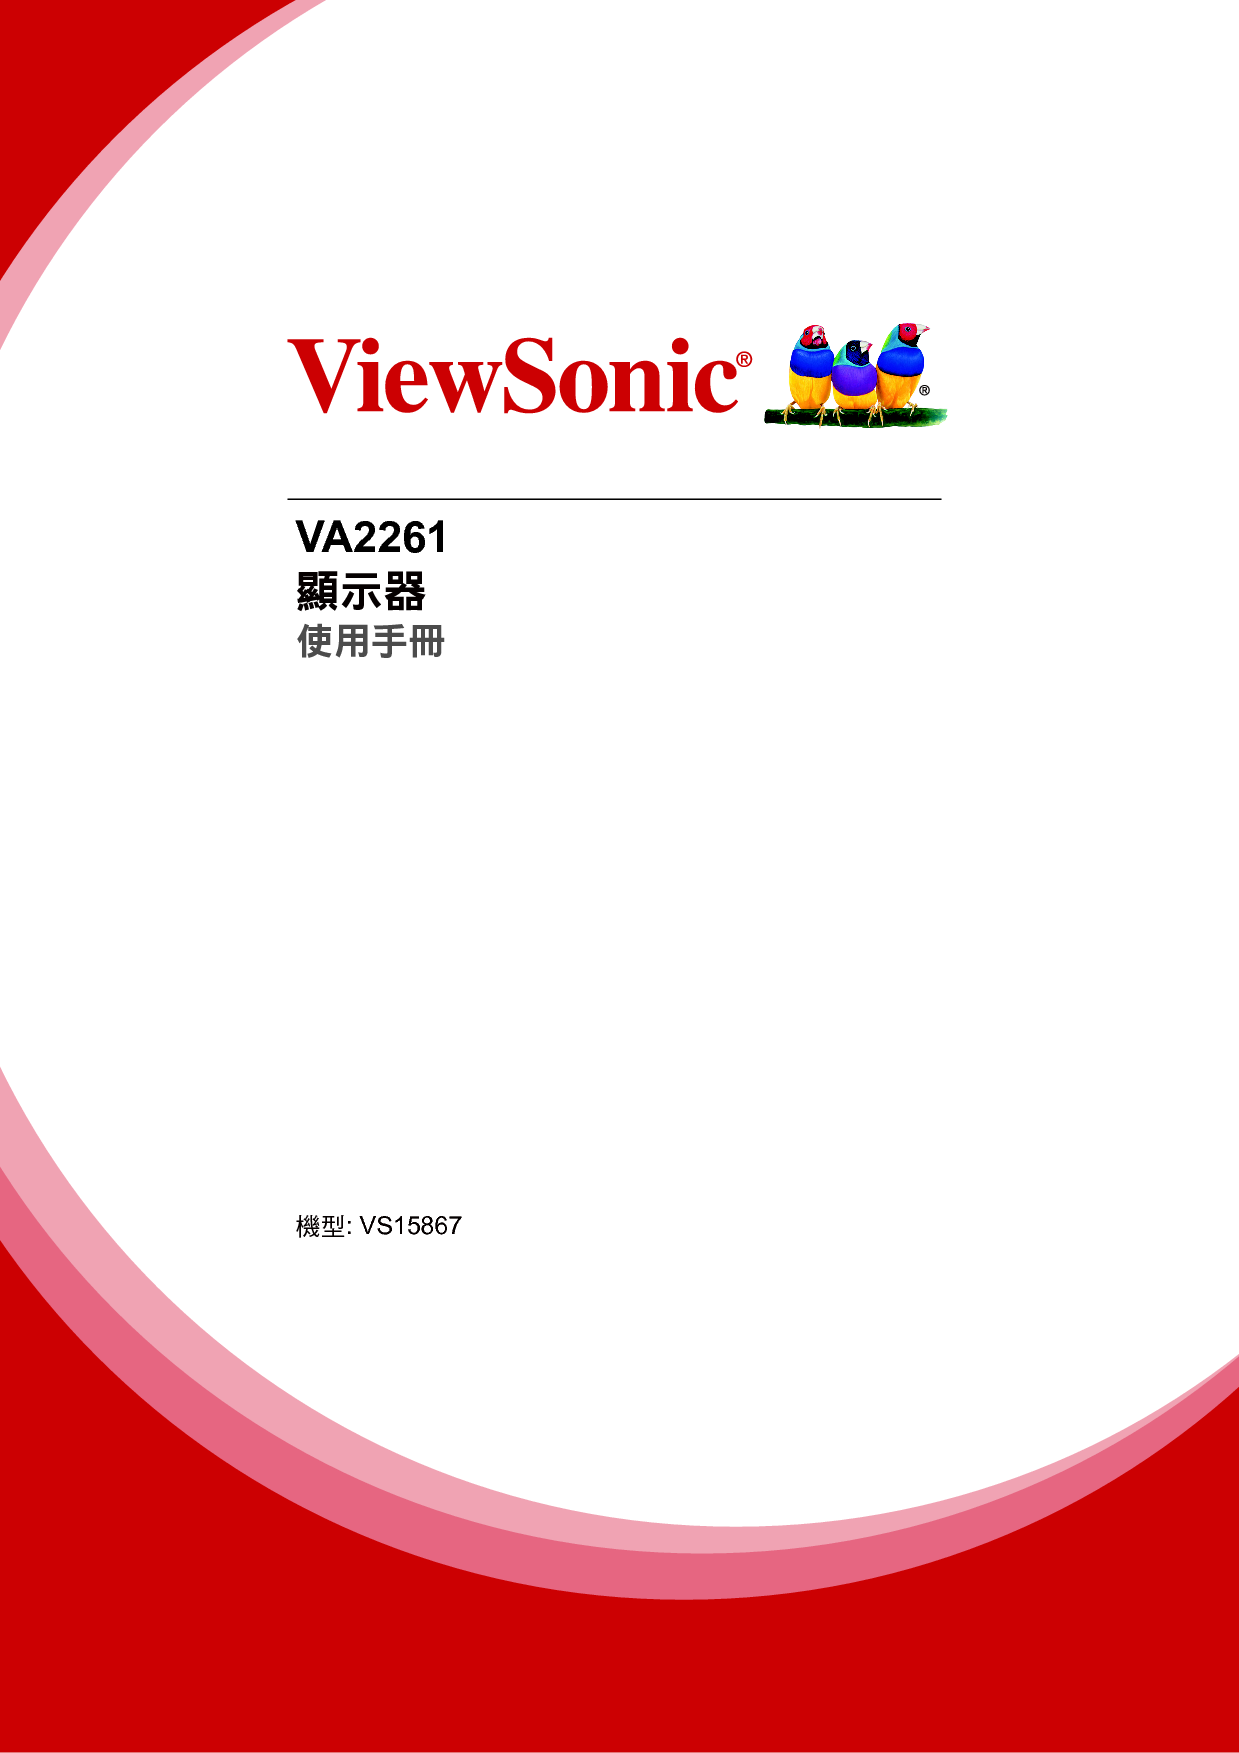 优派 ViewSonic VA2261 繁体 使用手册 封面